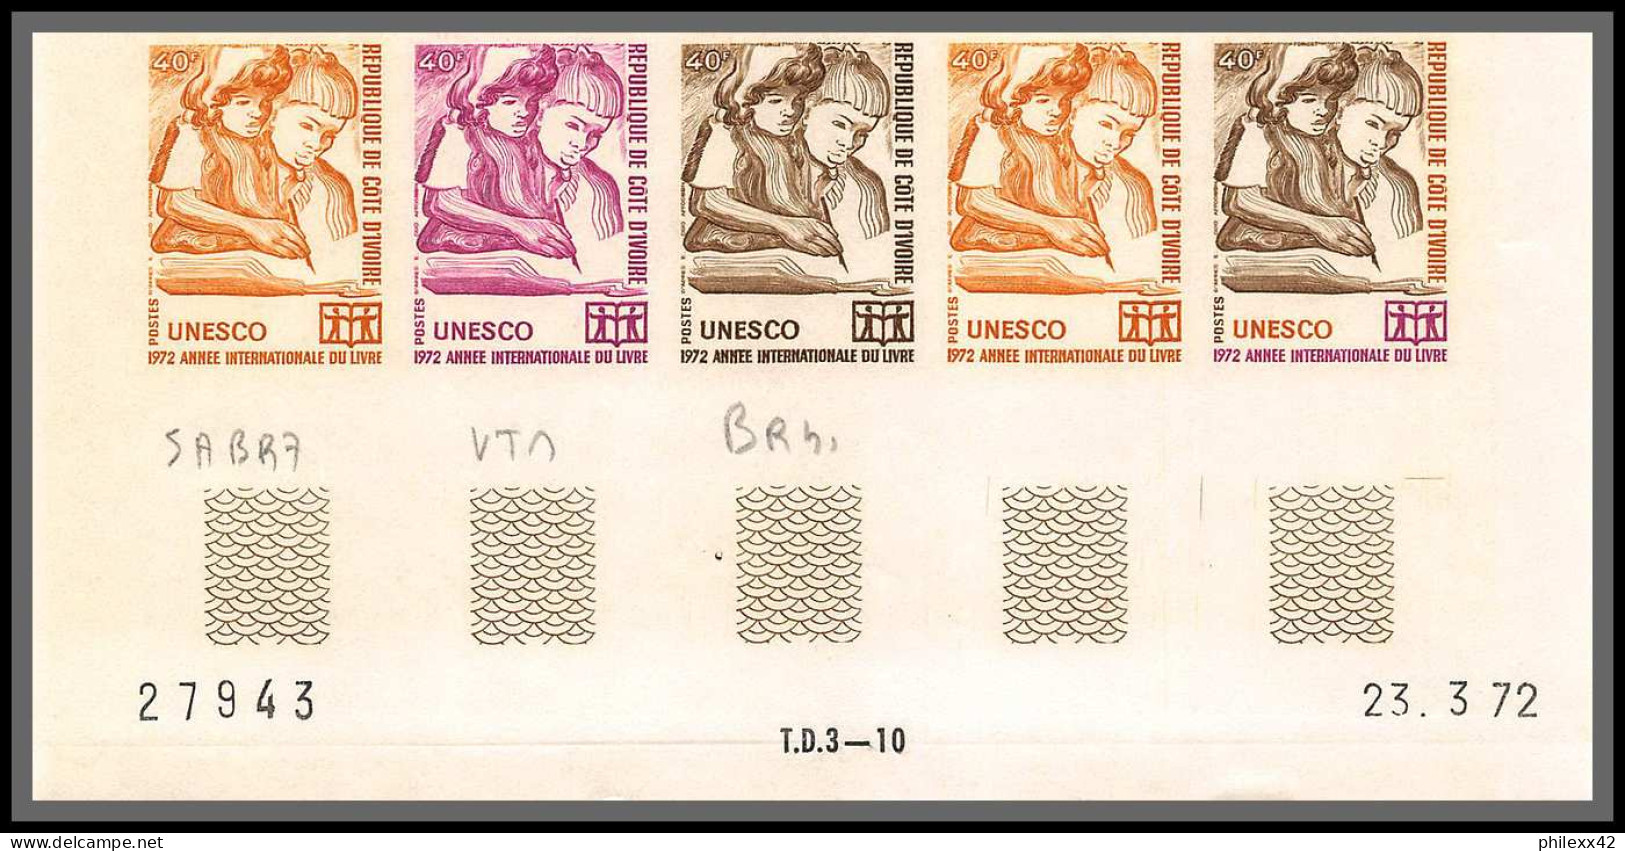 93796c Cote D'ivoire N°334 Unesco Année Du Livre Year Of Book 1972 Bande 5 Coin Daté Essai Proof Non Dentelé Imperf ** - UNESCO